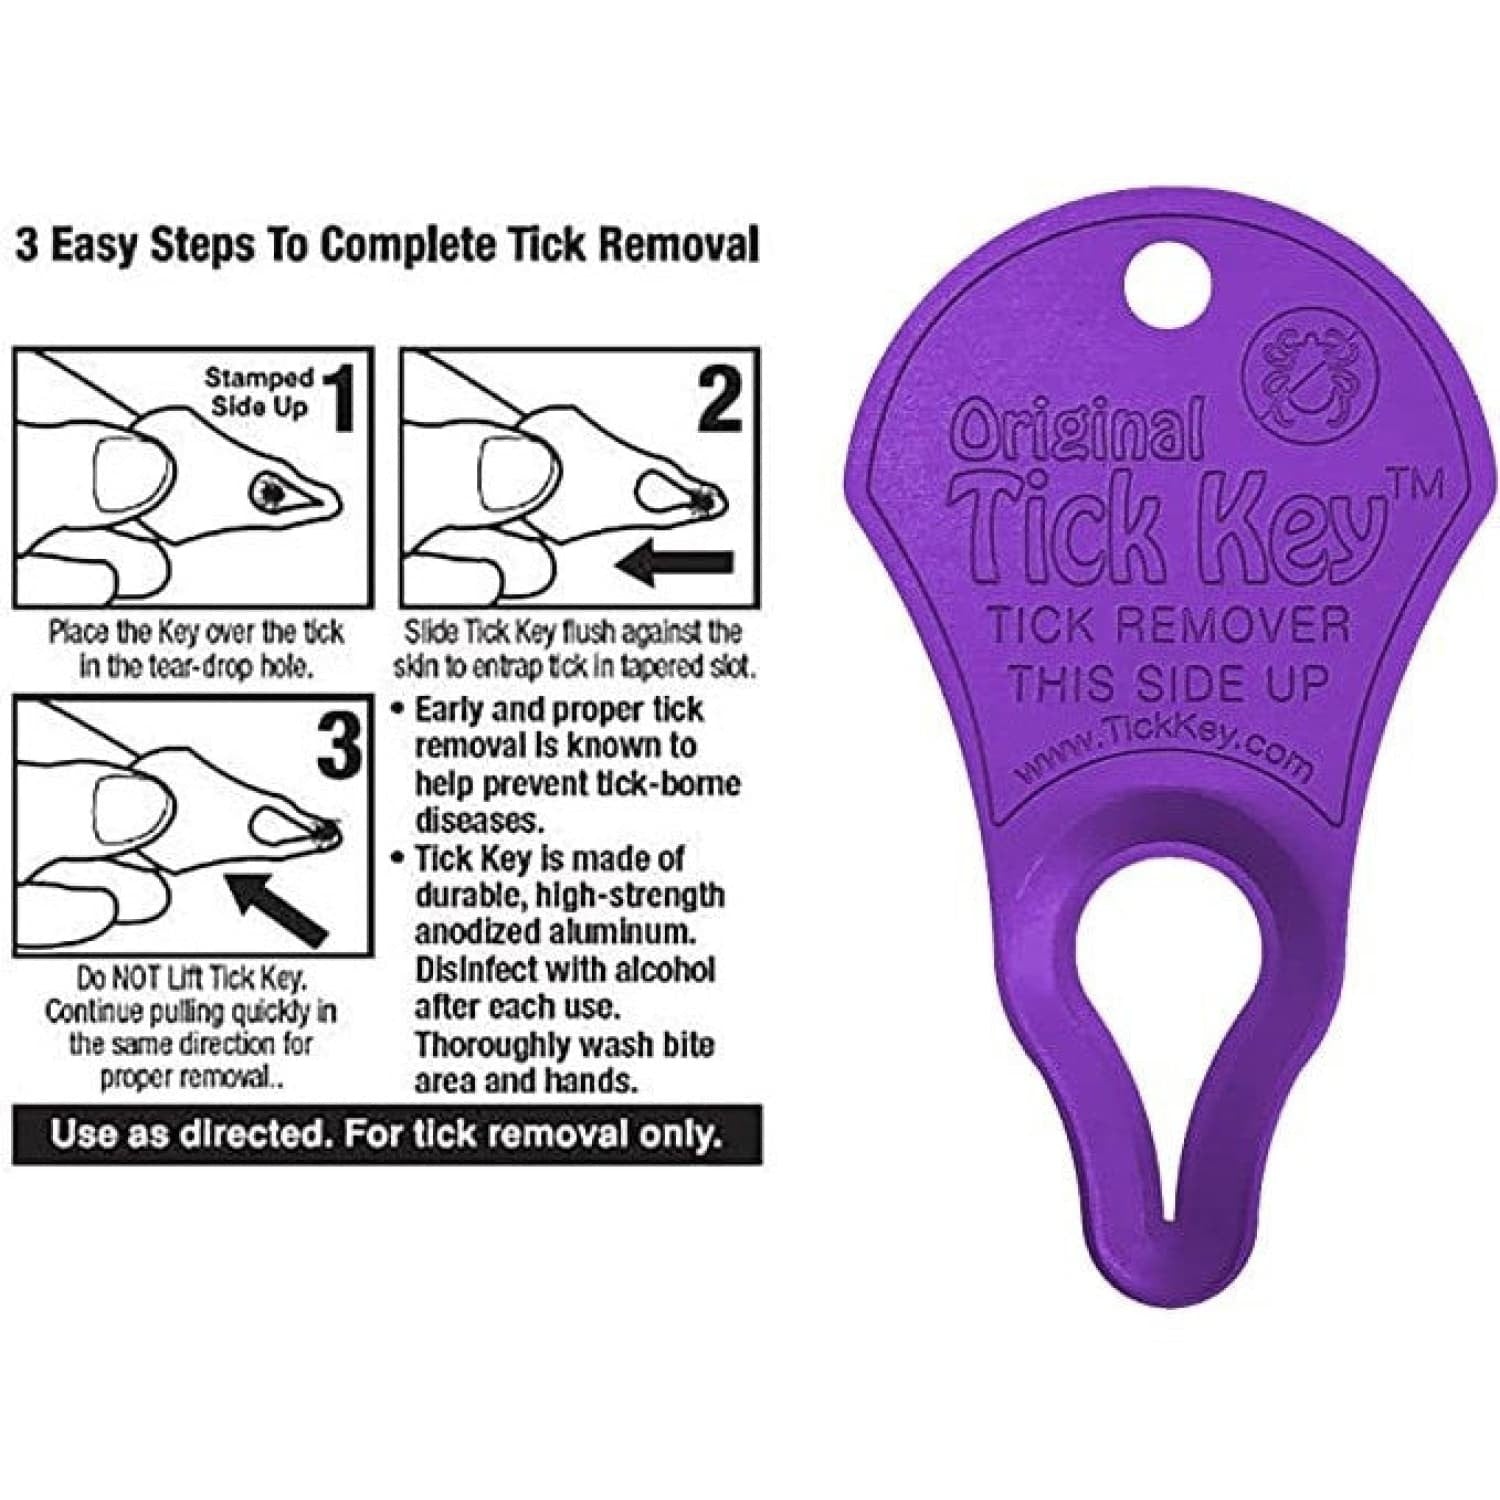 The Original Tick Key Instruction Guide